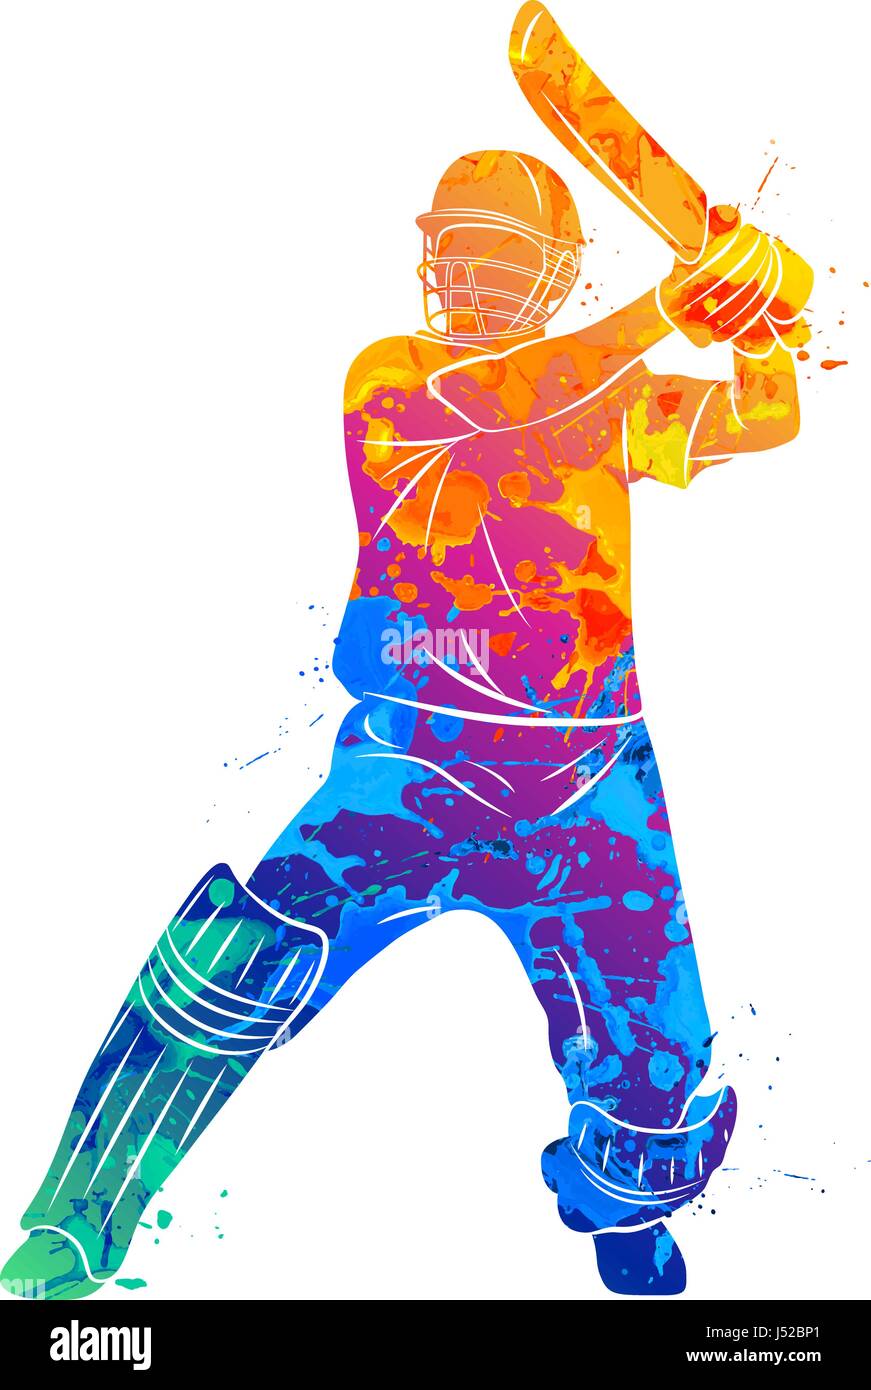 Abstract batsman playing cricket Stock Vector